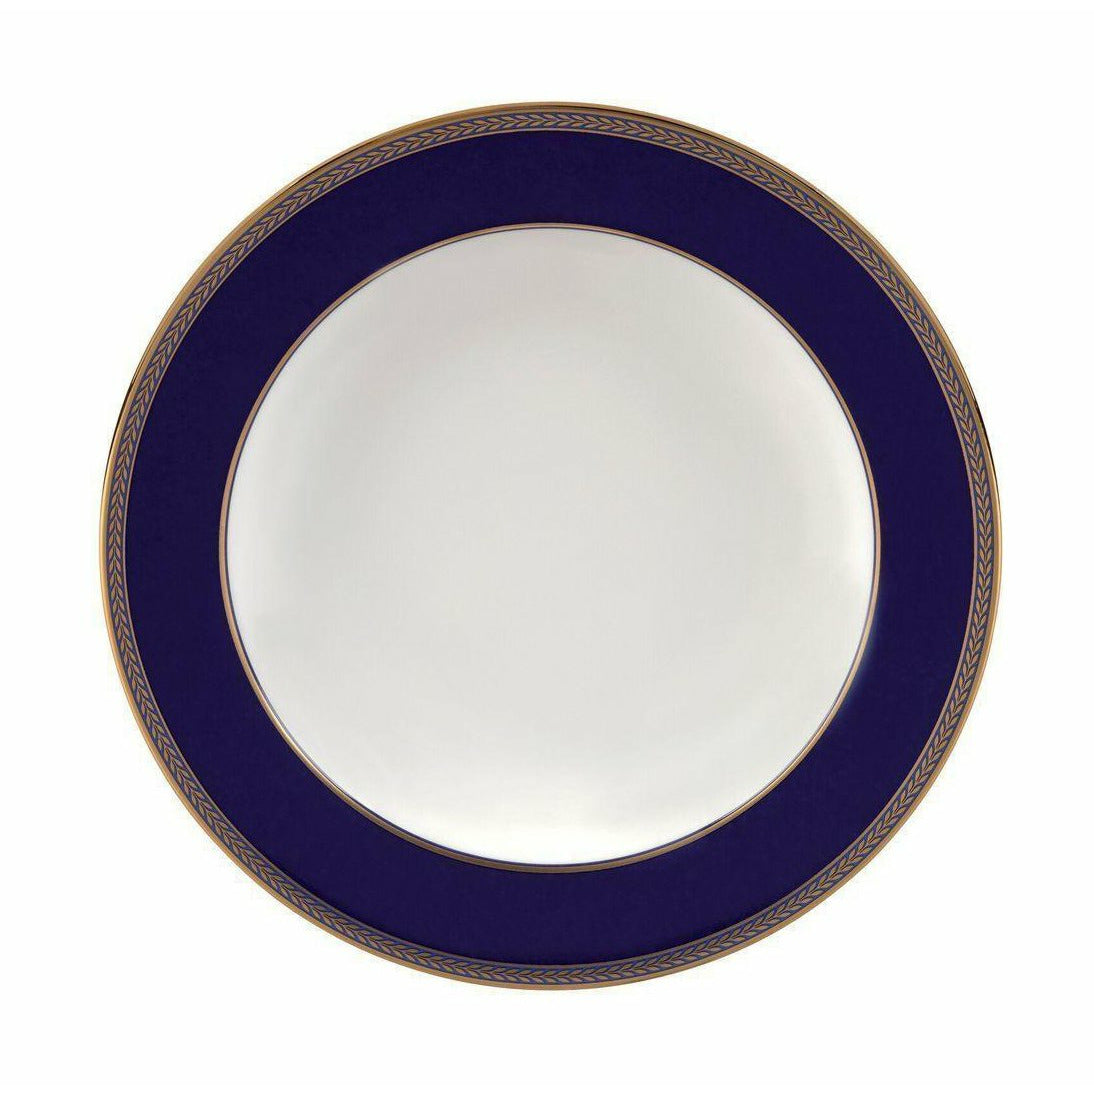 Wedgwood Plaque profonde en or Renaissance 23 cm, blanc / bleu